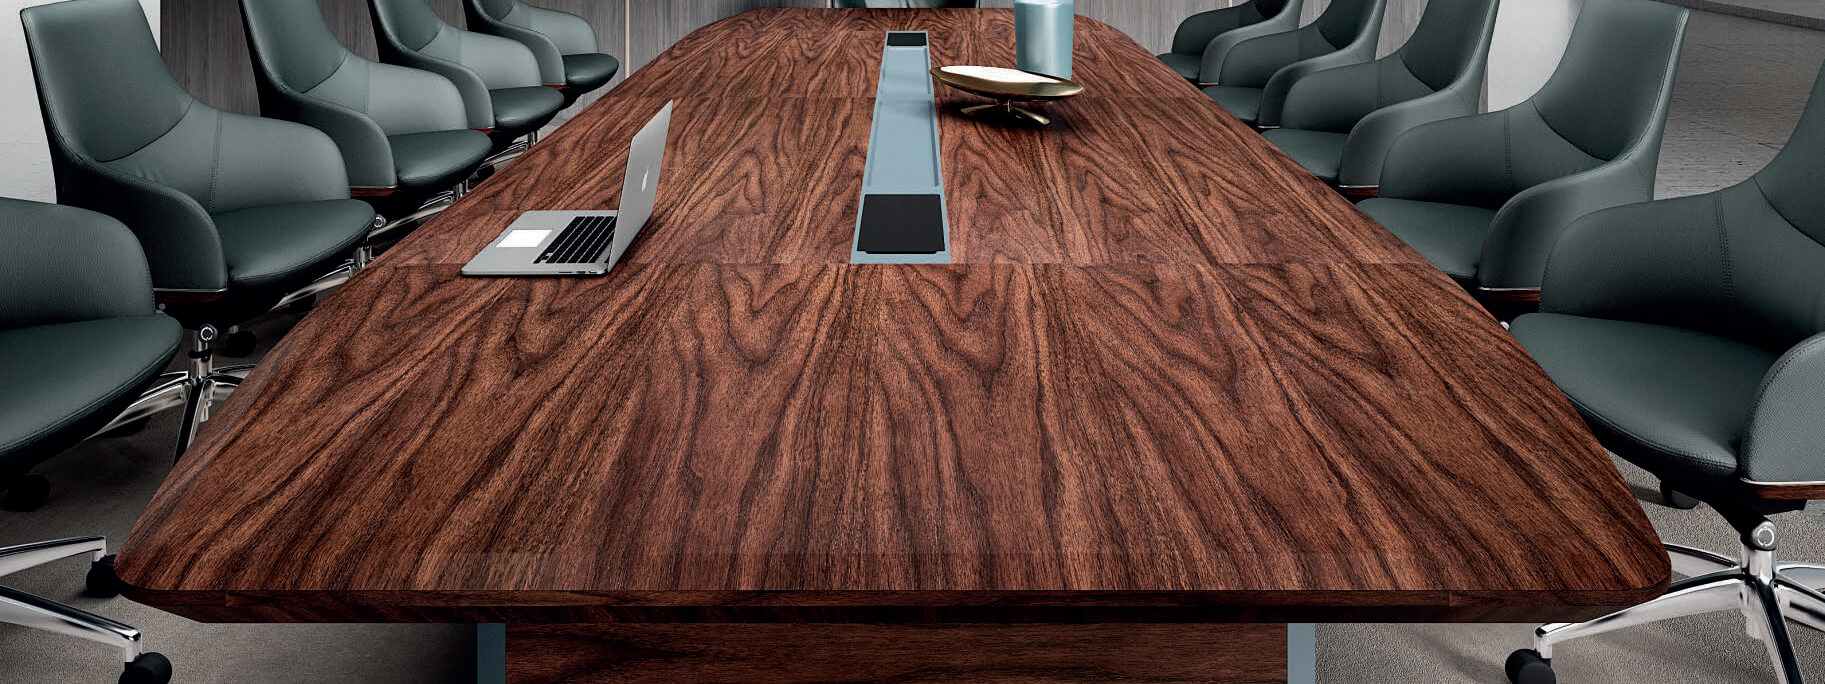 طاولة اجتماعات خشبية و 10 كراسي تنفيذية سوداء